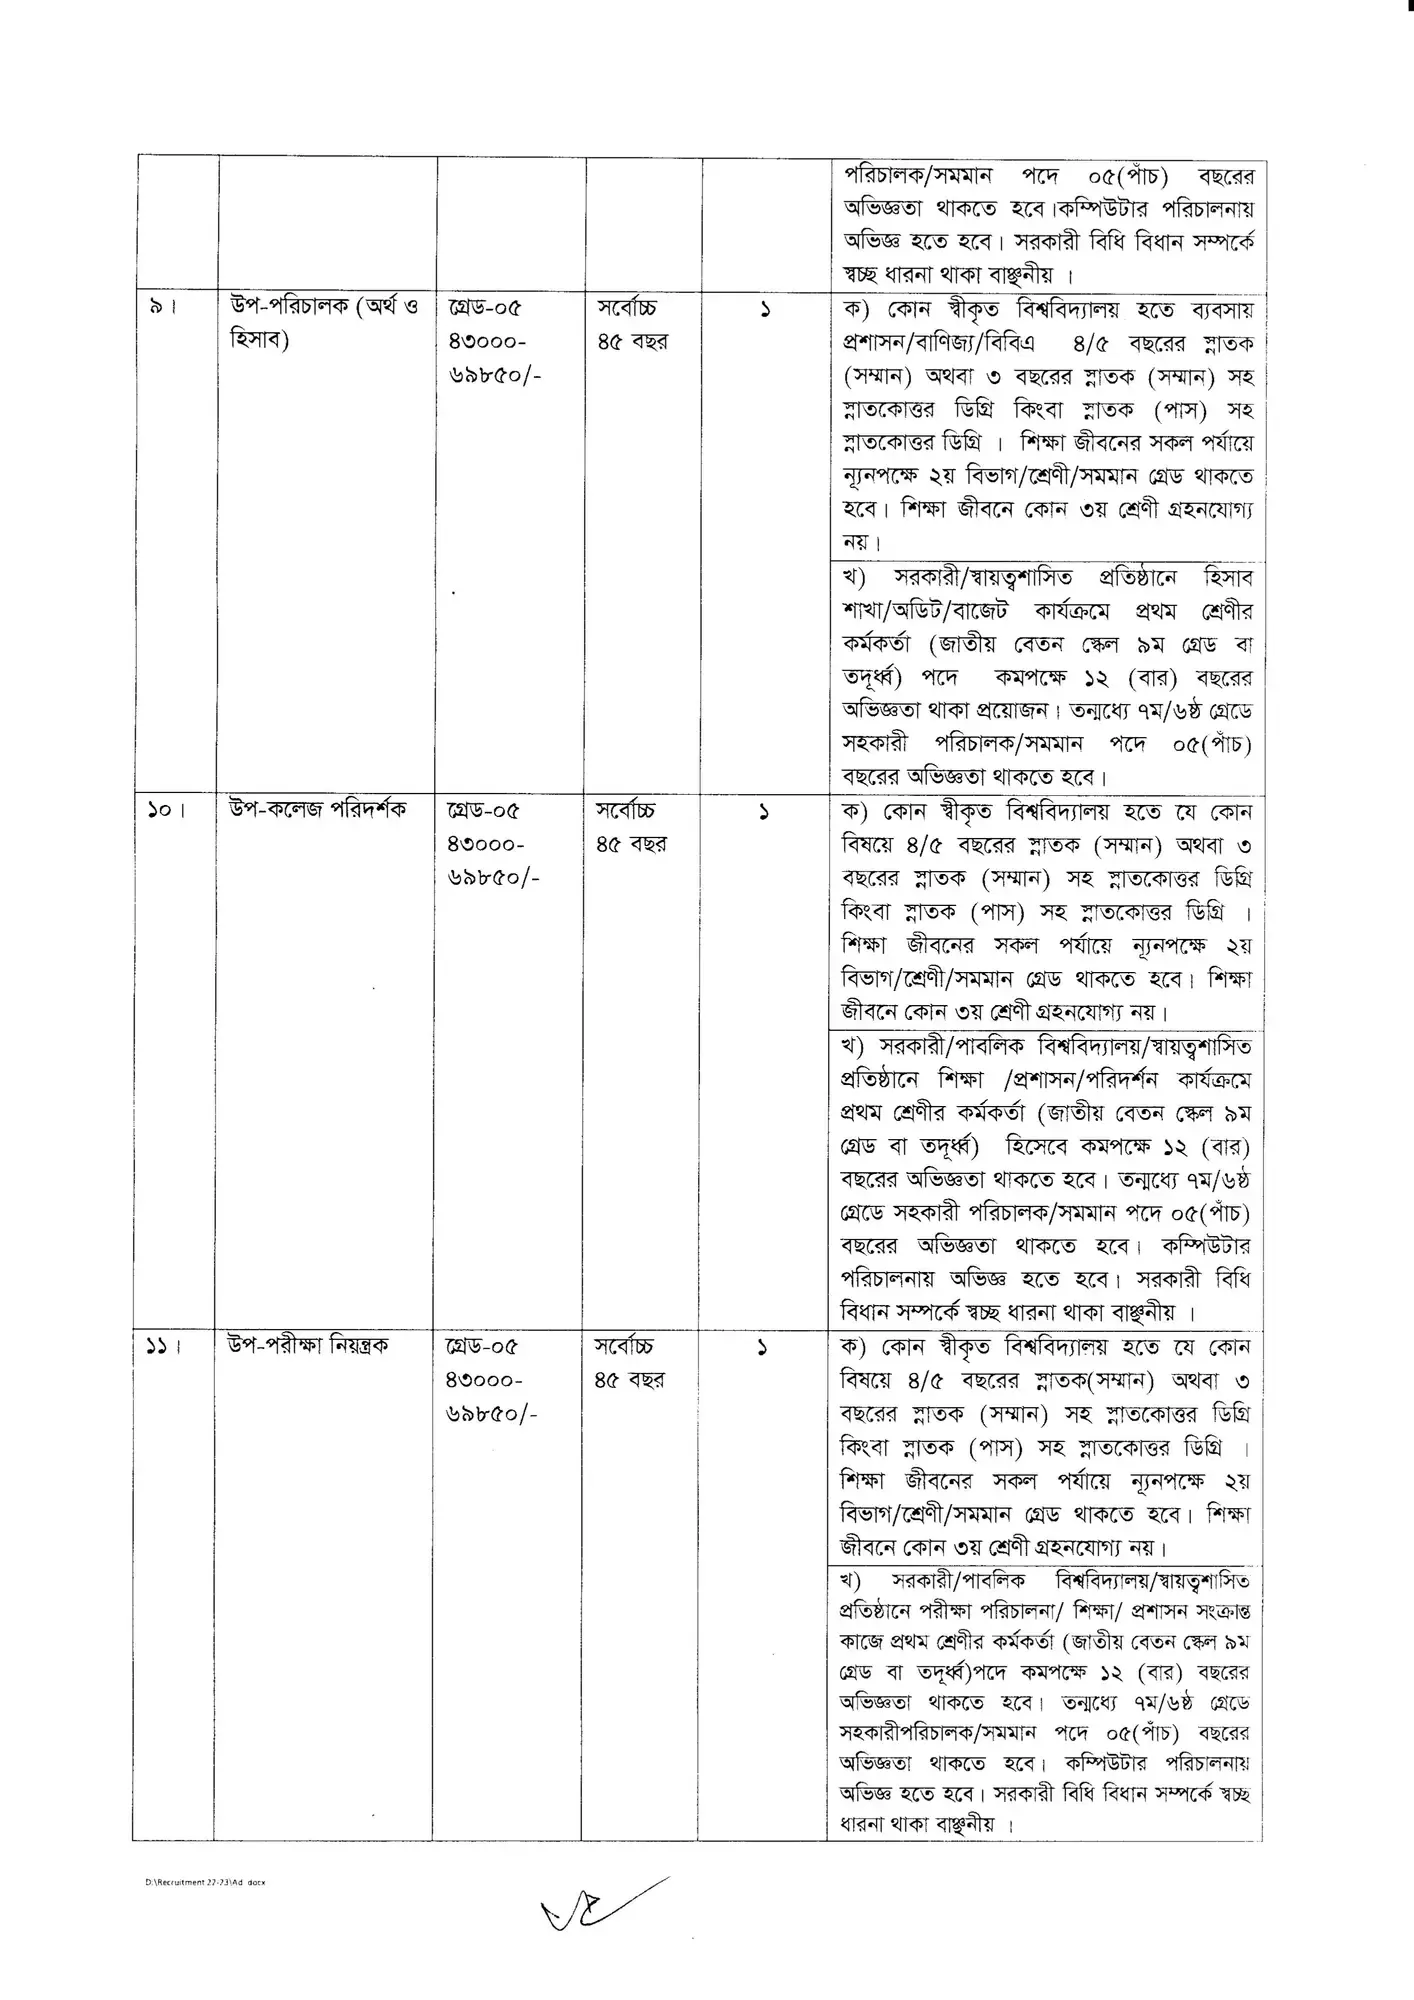 রাজশাহী মেডিকেল বিশ্ববিদ্যালয় নিয়োগ বিজ্ঞপ্তি ২০২৪ pdf